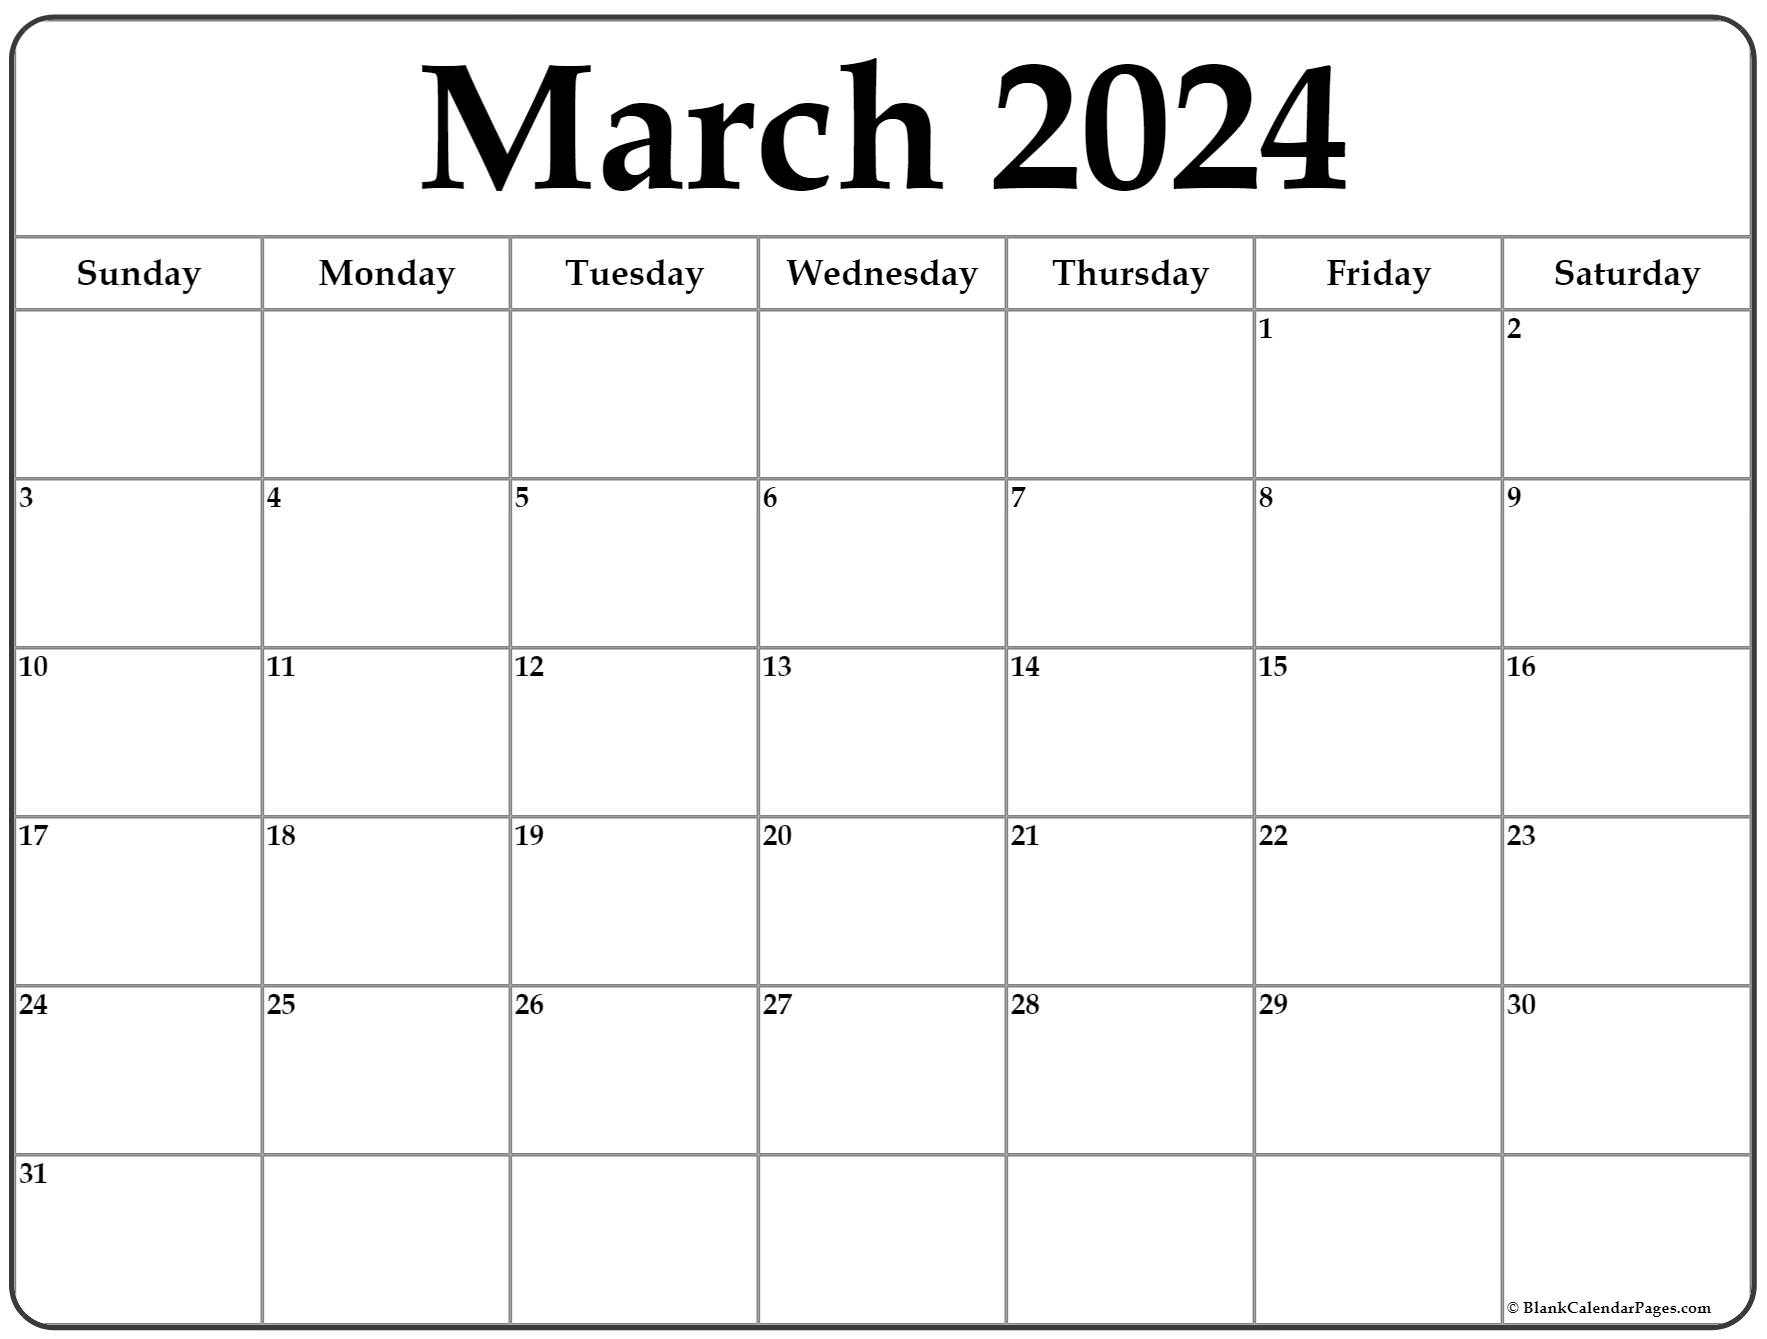 March Blank Calendar 2022 March 2022 Calendar | Free Printable Calendar Templates